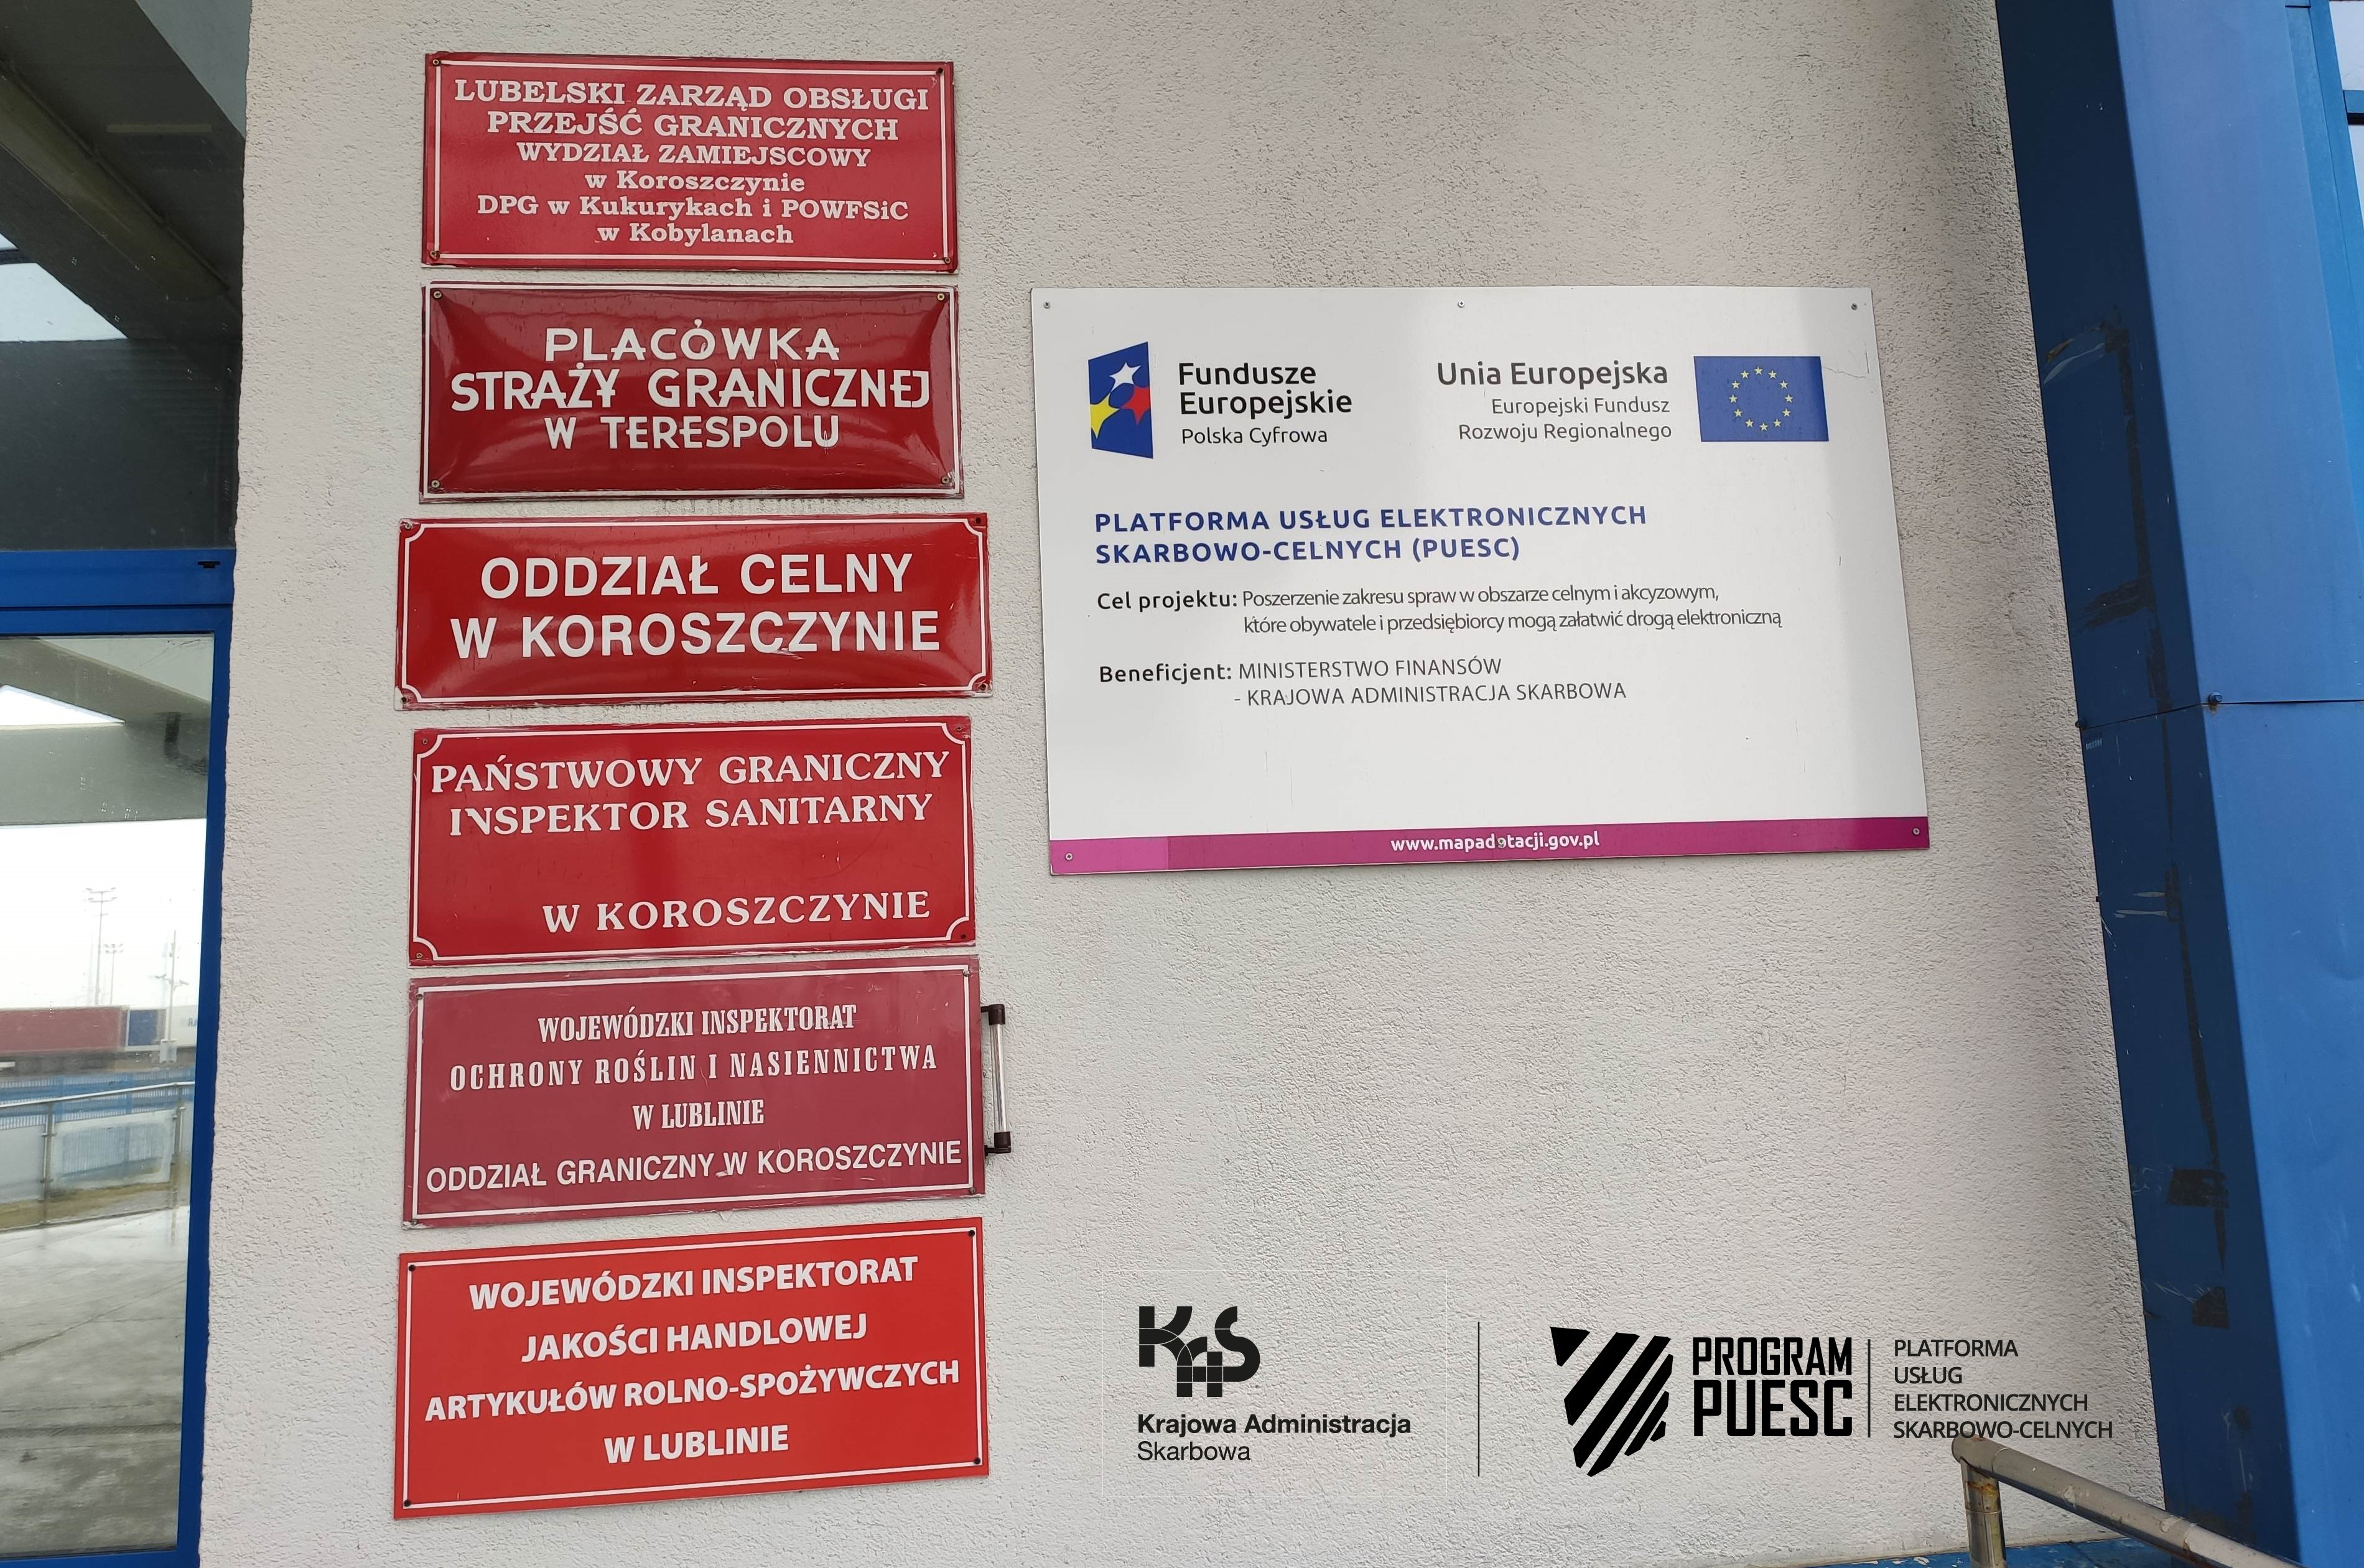 Na środku strony widać ścianę z czerwonymi tabliczkami informującymi o instytucjach mieszczących się w budynku. Na jednej z tablic umieszczona jest informacja o Projekcie PUESC i logotypy: Krajowa Administracja Skarbowa, Fundusze Europejskie Polska Cyfrowa, System Informacyjny Skarbowo-Celny, Ministerstwo Finansów, Unia Europejska Europejski Fundusz Rozwoju Regionalnego.